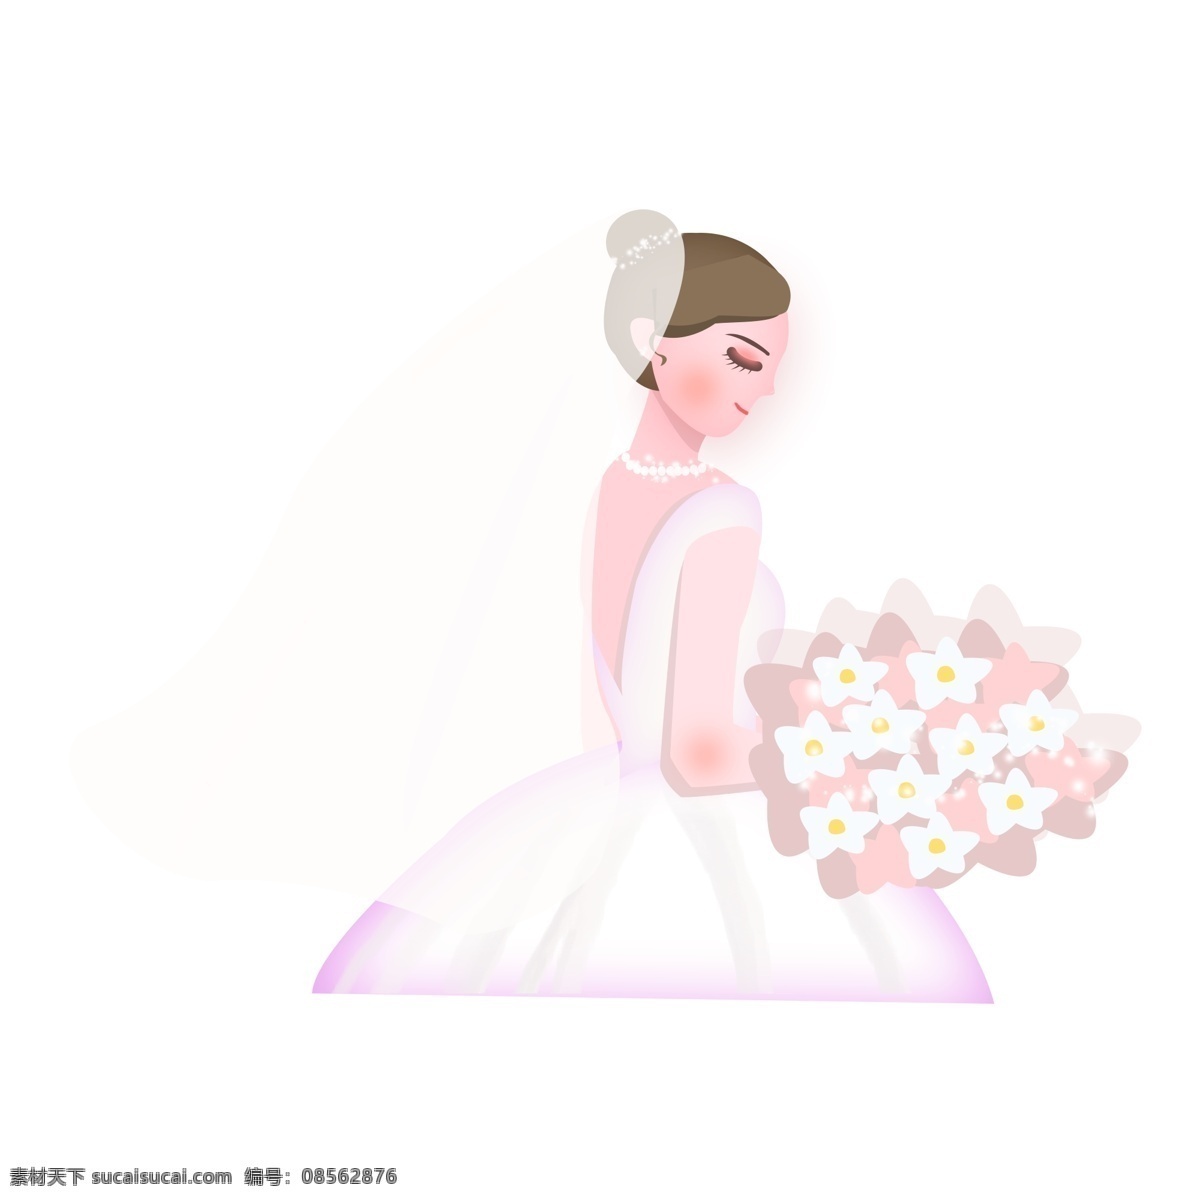 穿 婚纱 美丽 少女 商用 元素 卡通 唯美 清新 人物 手绘 捧花 女生 新娘 婚礼季